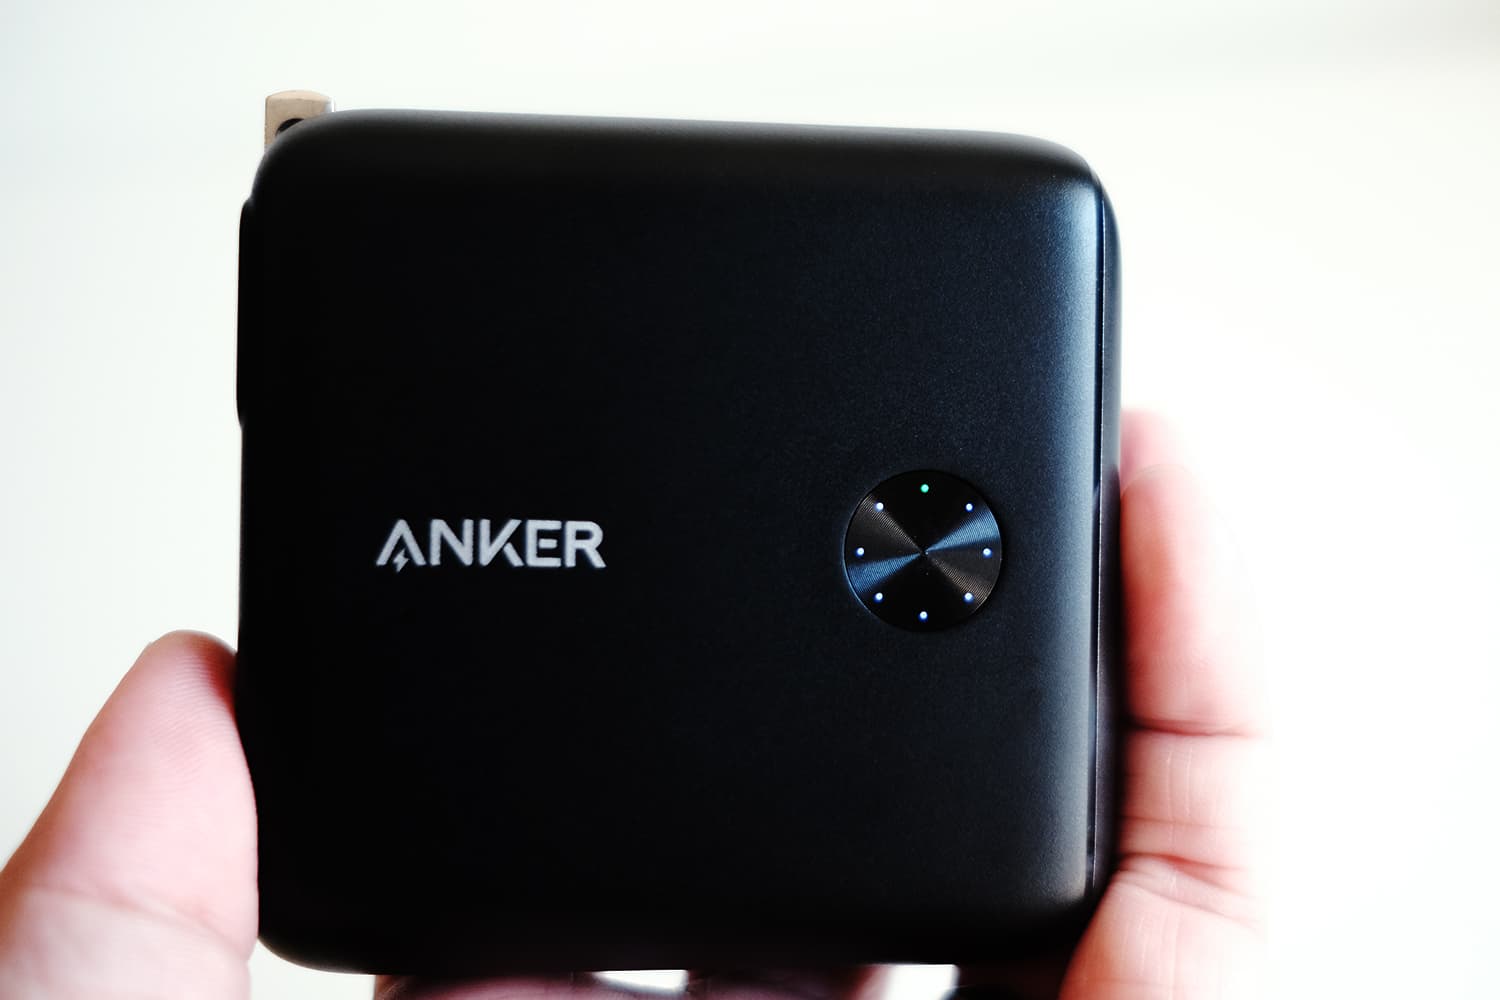 Anker PowerCore Fusion 10000 の低電流モードに代わるとLEDインジゲーターの1点が緑色に